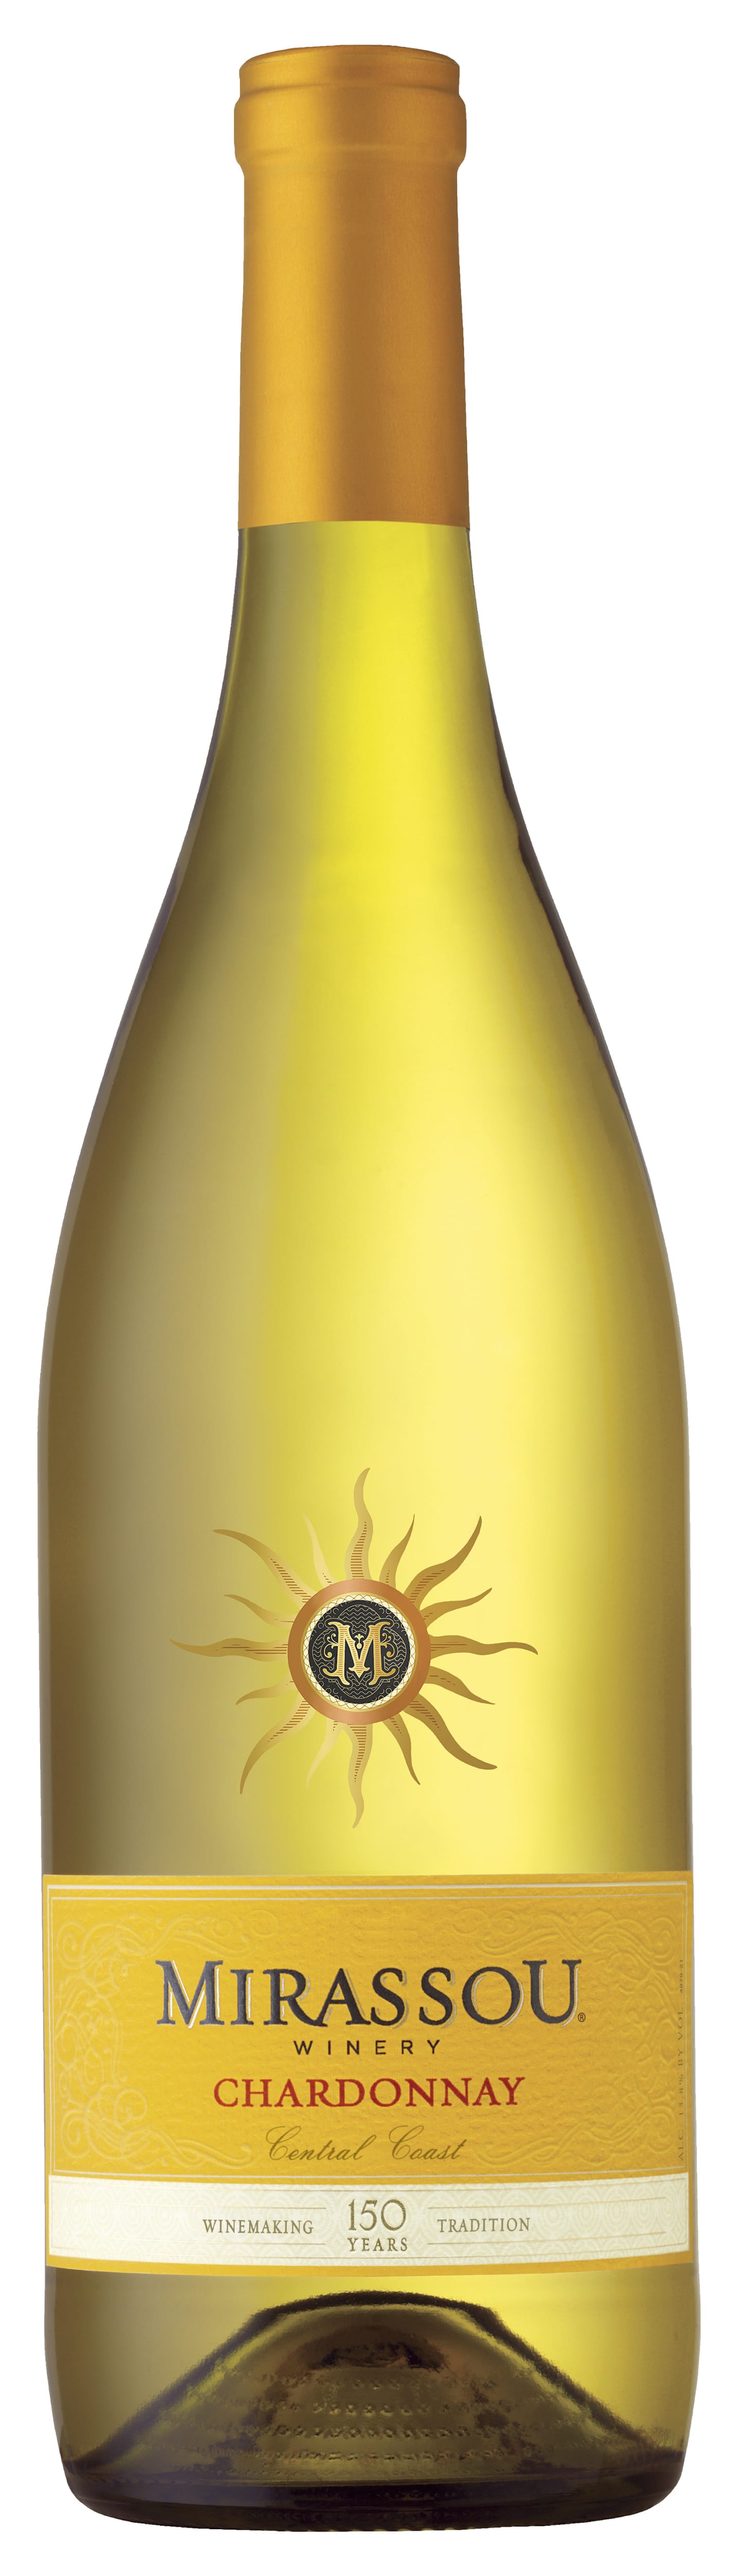 Mirassou Winery Chardonnay 2015